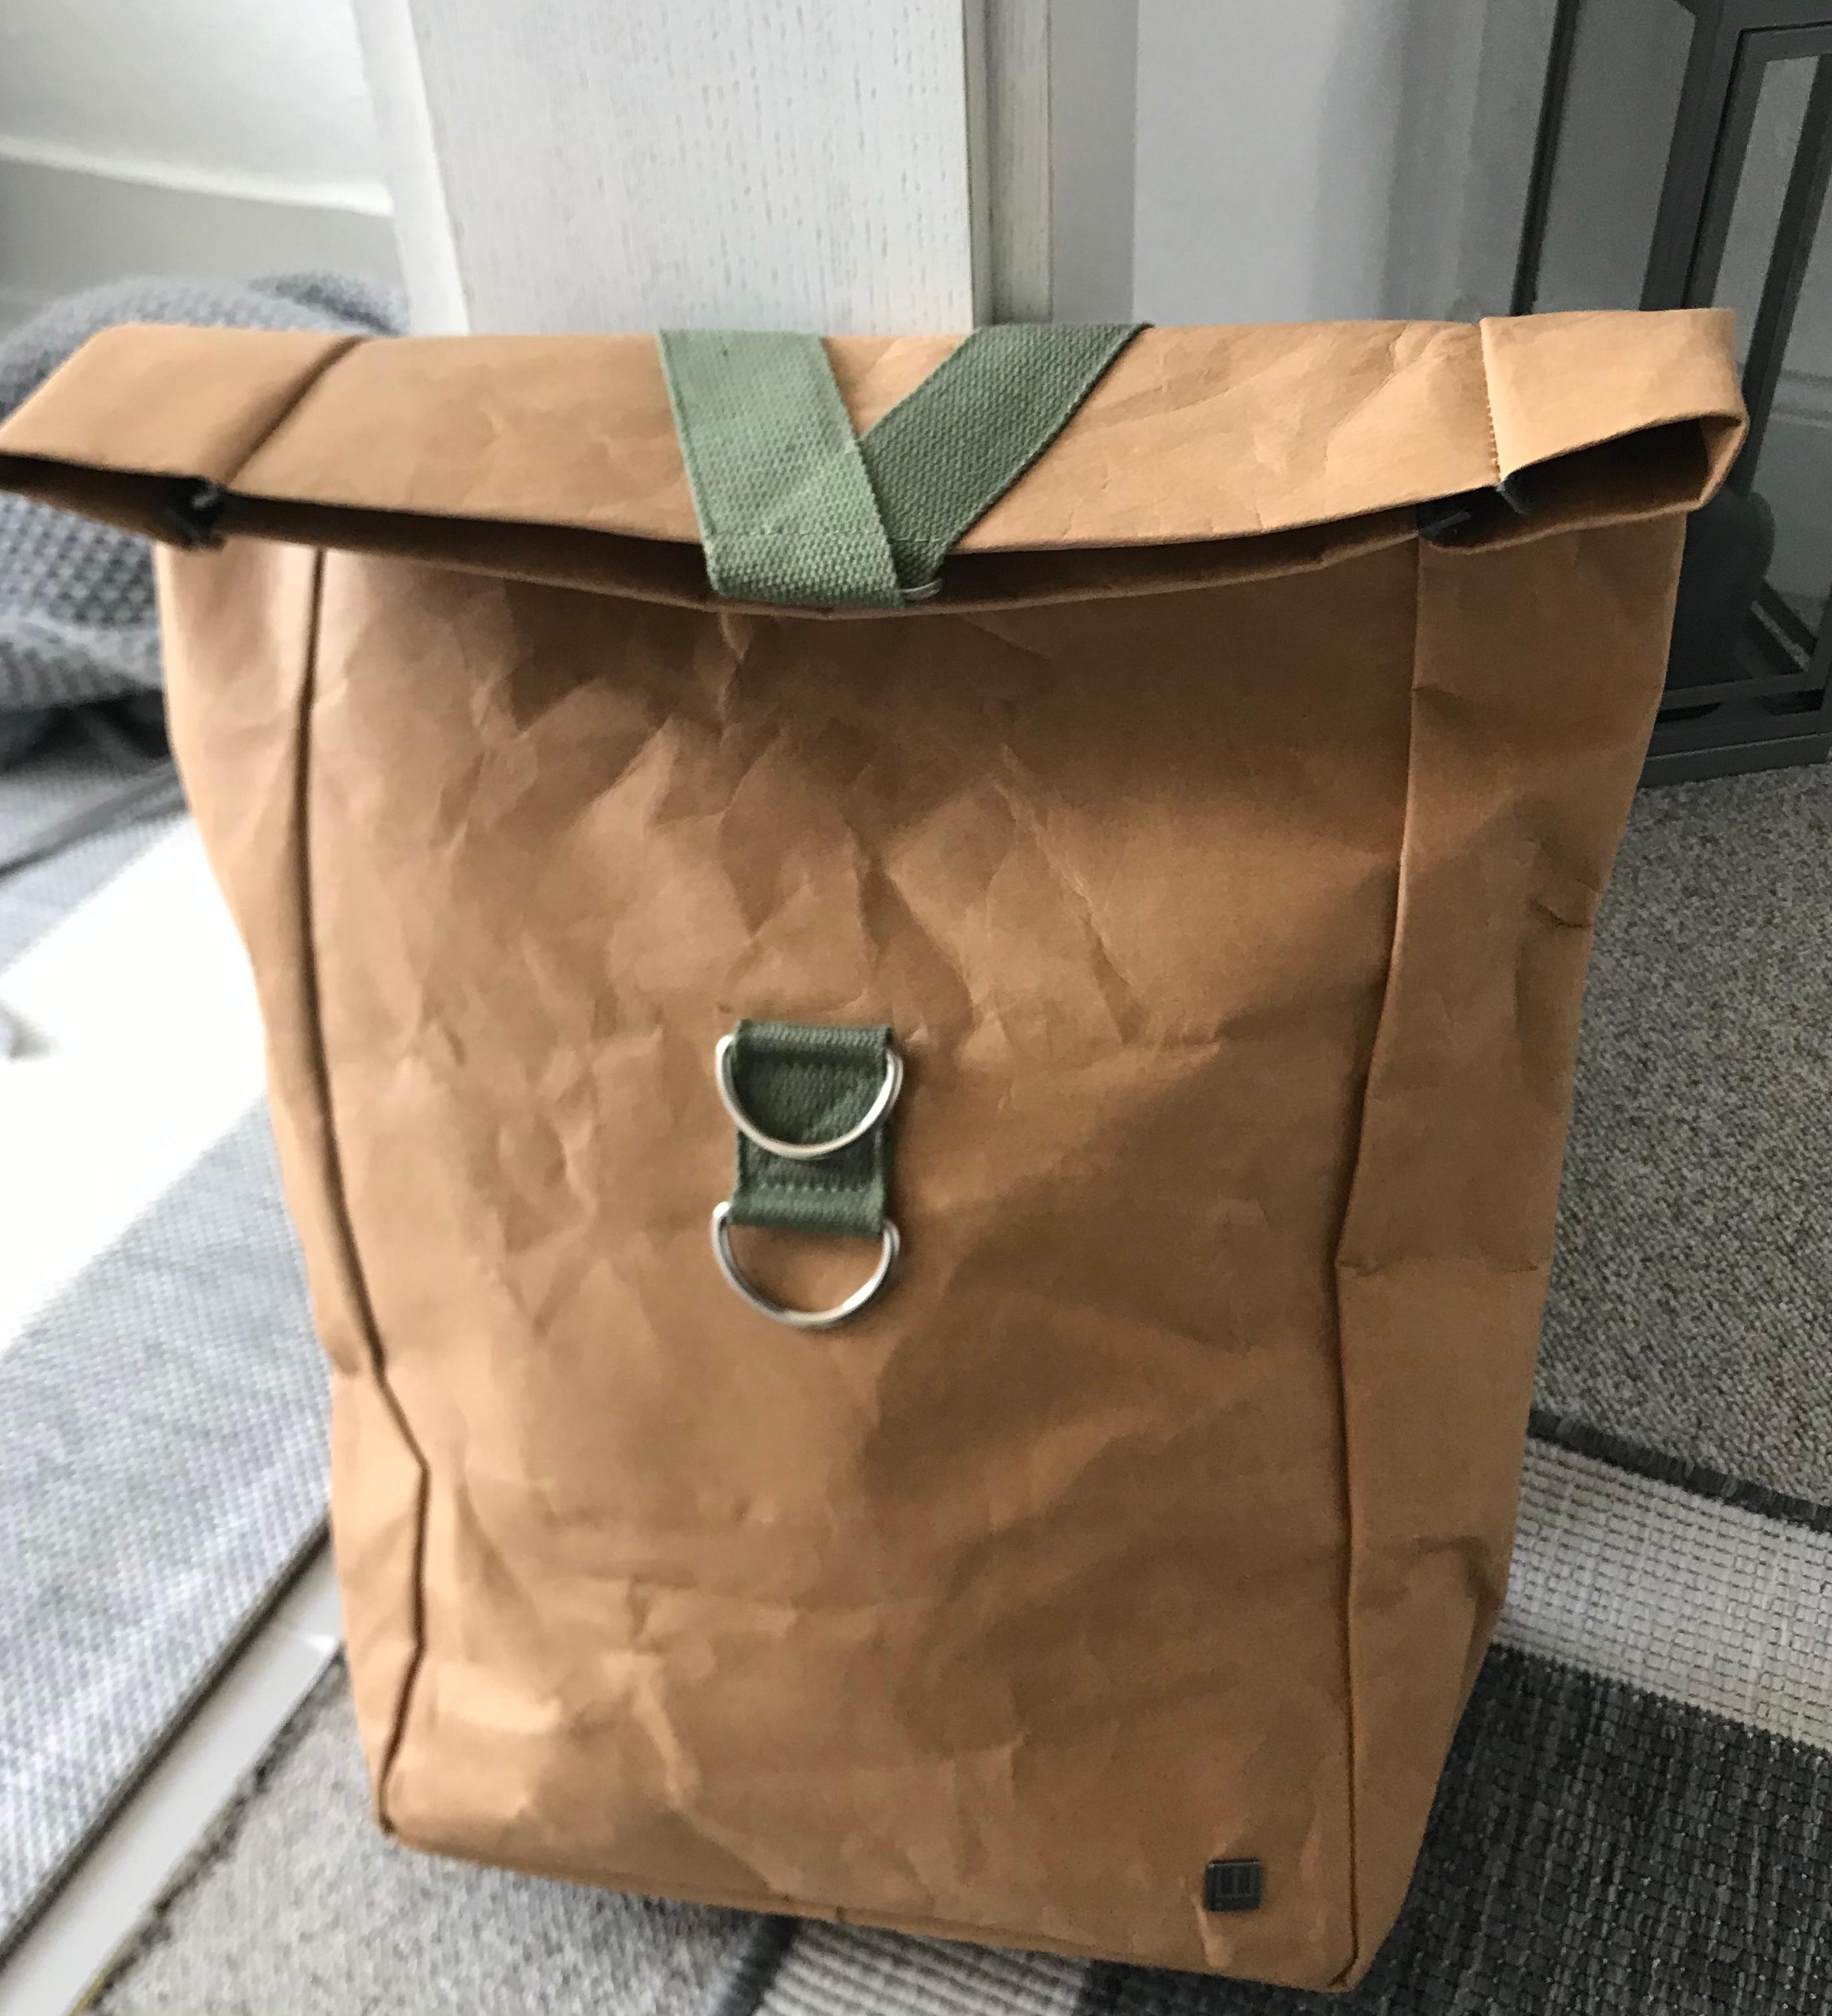 Nachhaltigkeit - ich will darauf achten! Dieser Rucksack ist aus Craft-Papier, gewachst, gestern gekauft und schon 😍